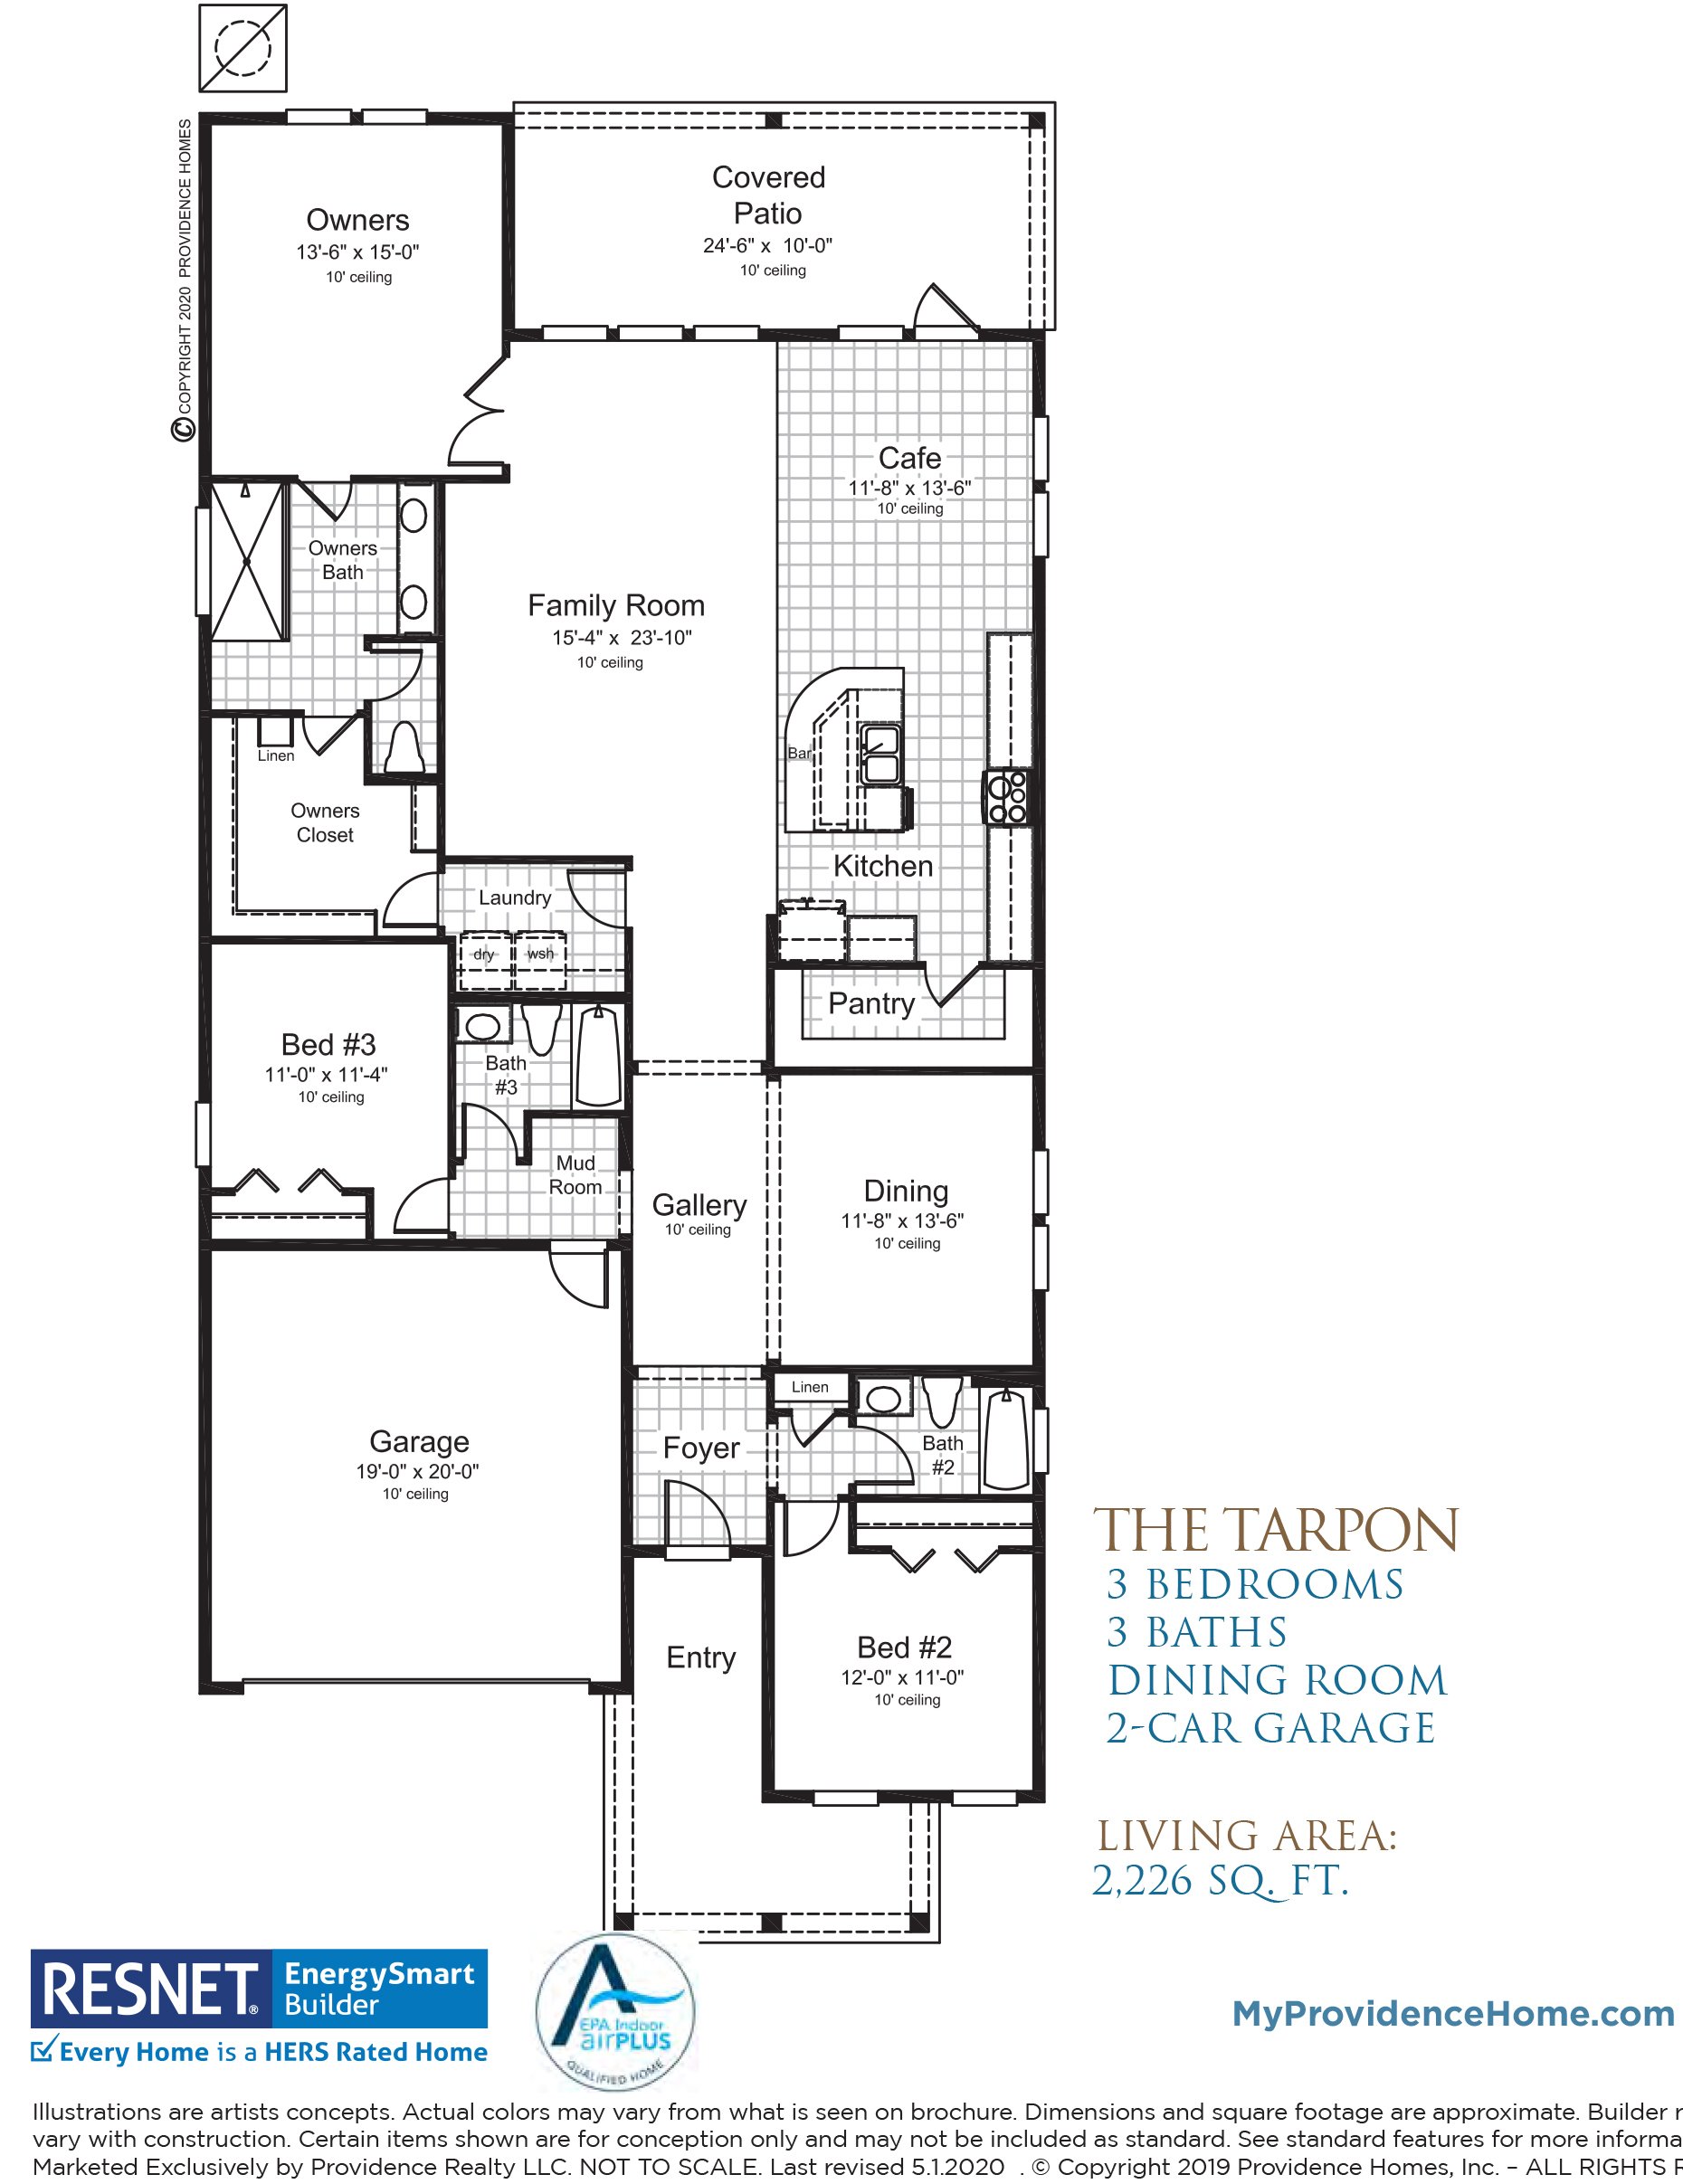 The Tarpon floorplan